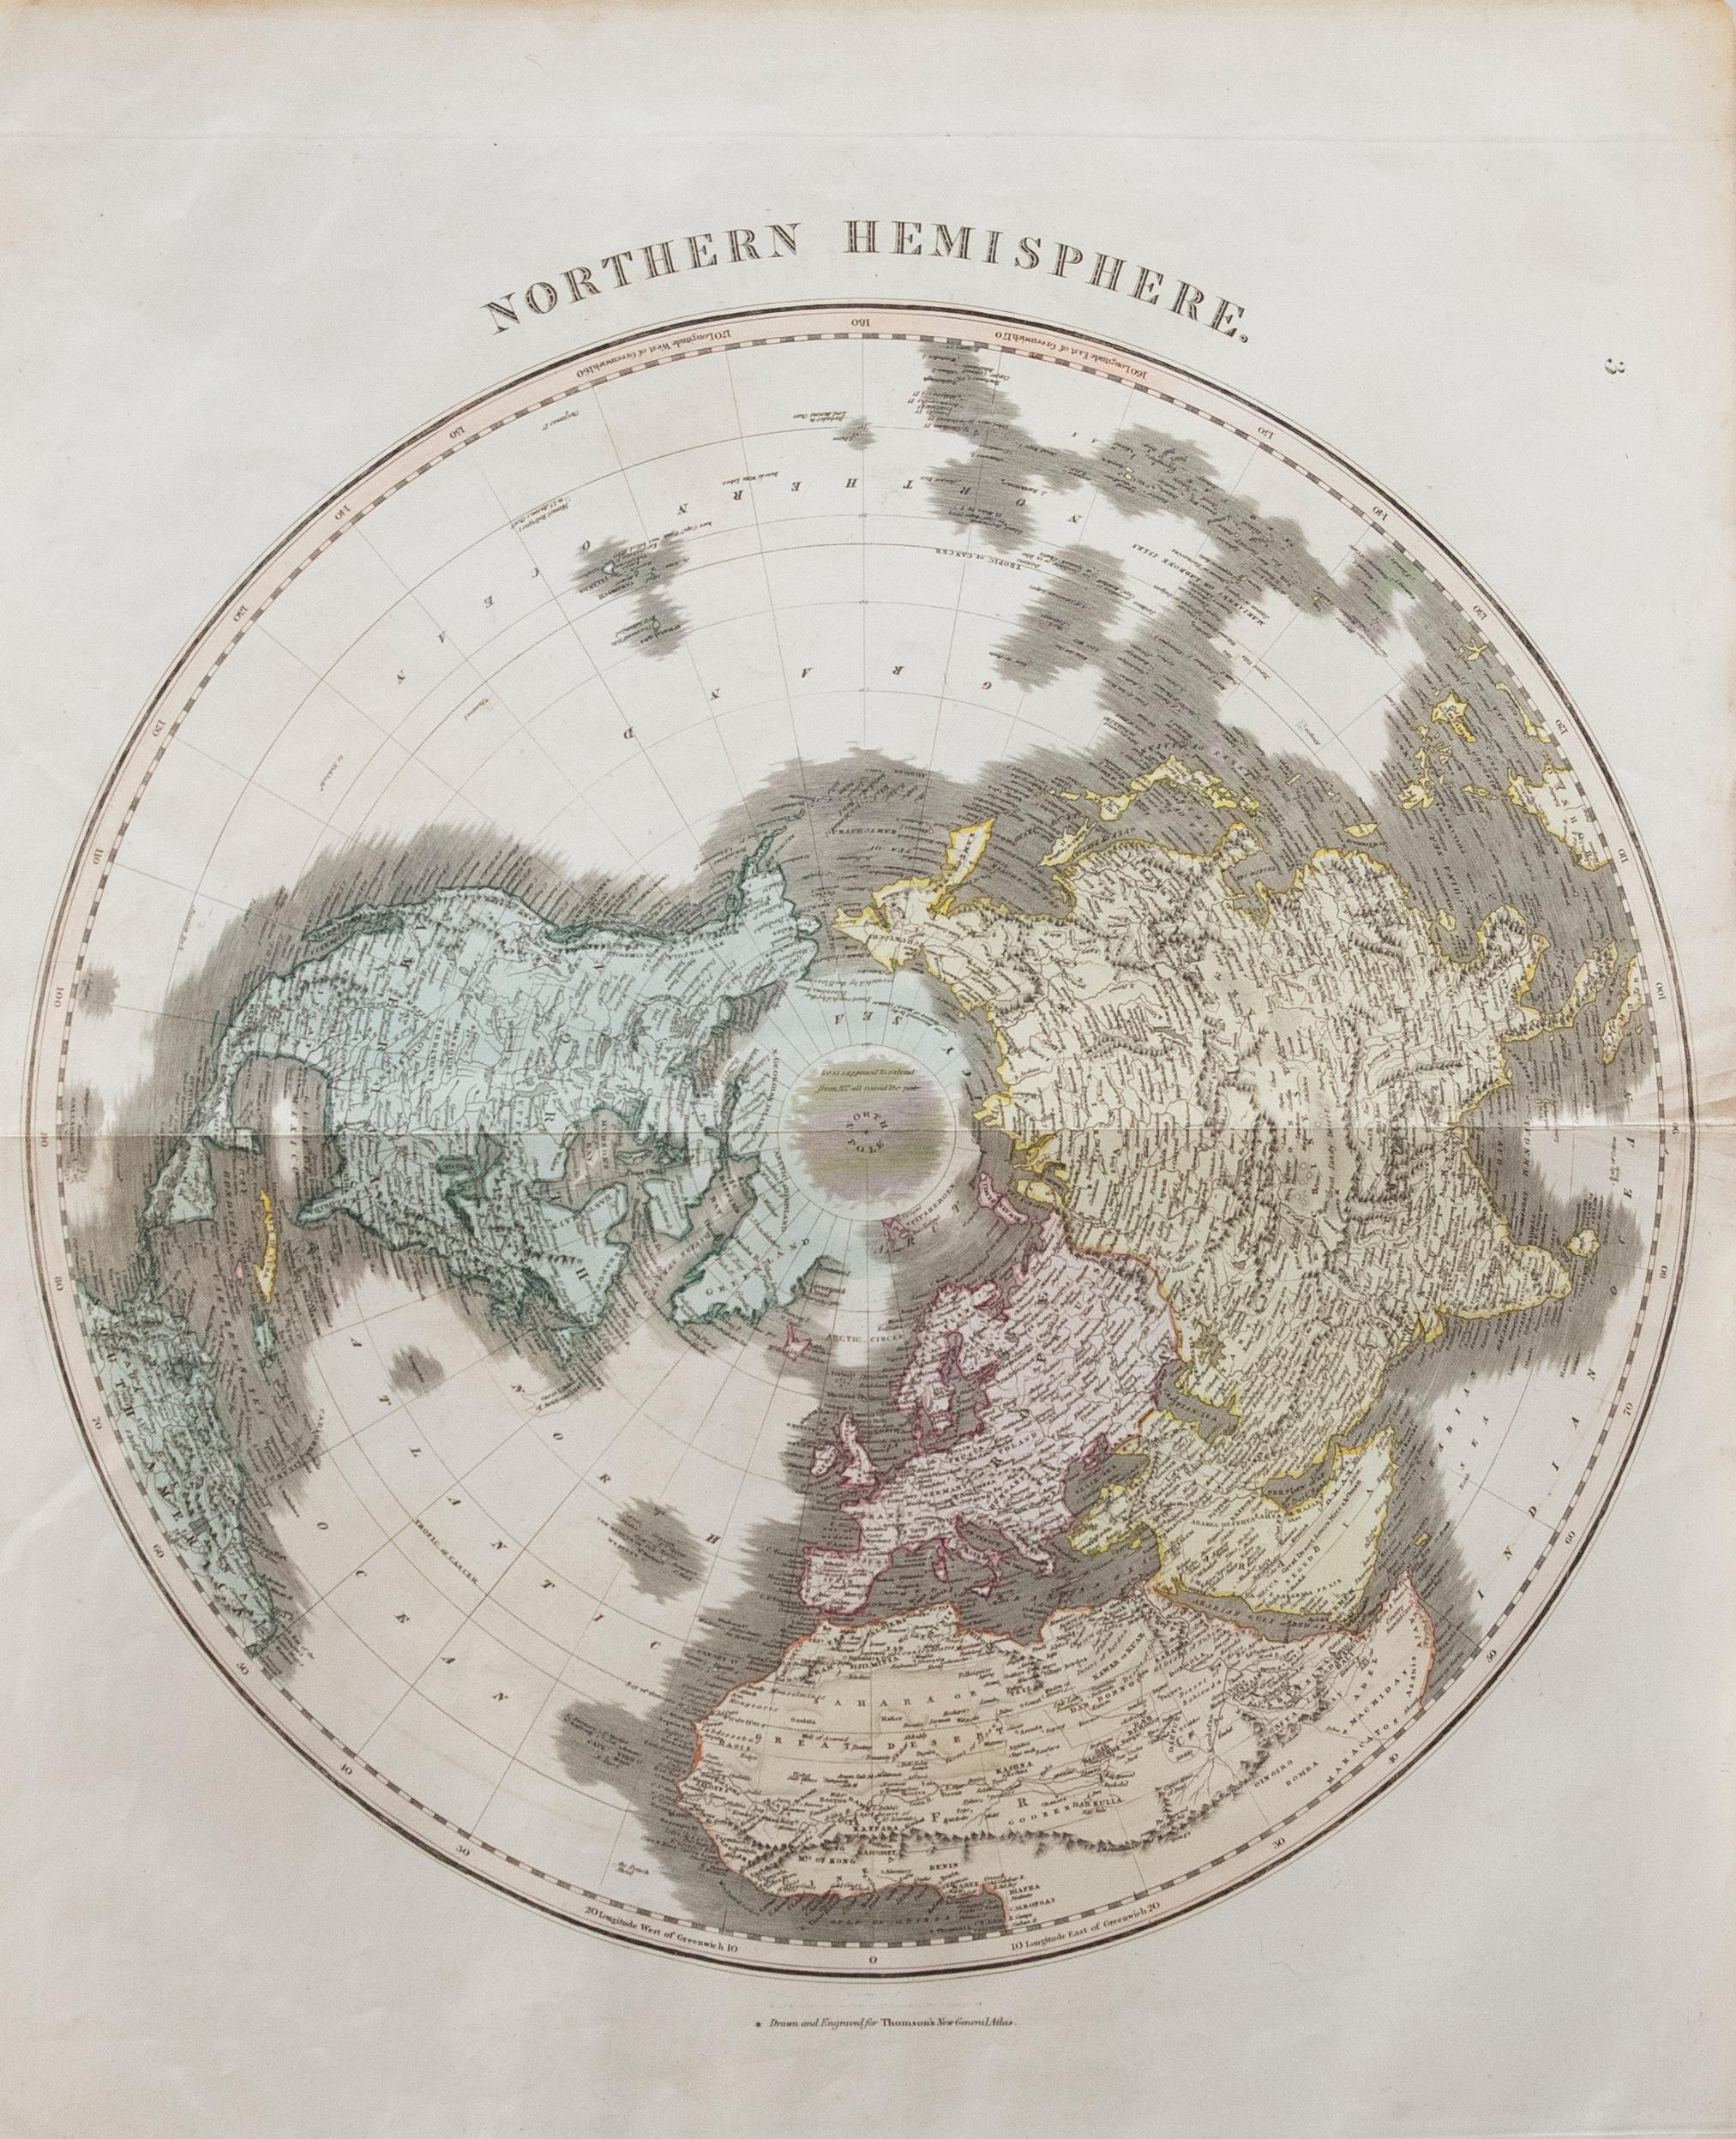 Belle carte gravée de l'hémisphère nord, tirée de la deuxième édition du "New General Atlas" de John Thomson, publiée en 1830. Sur le papier.